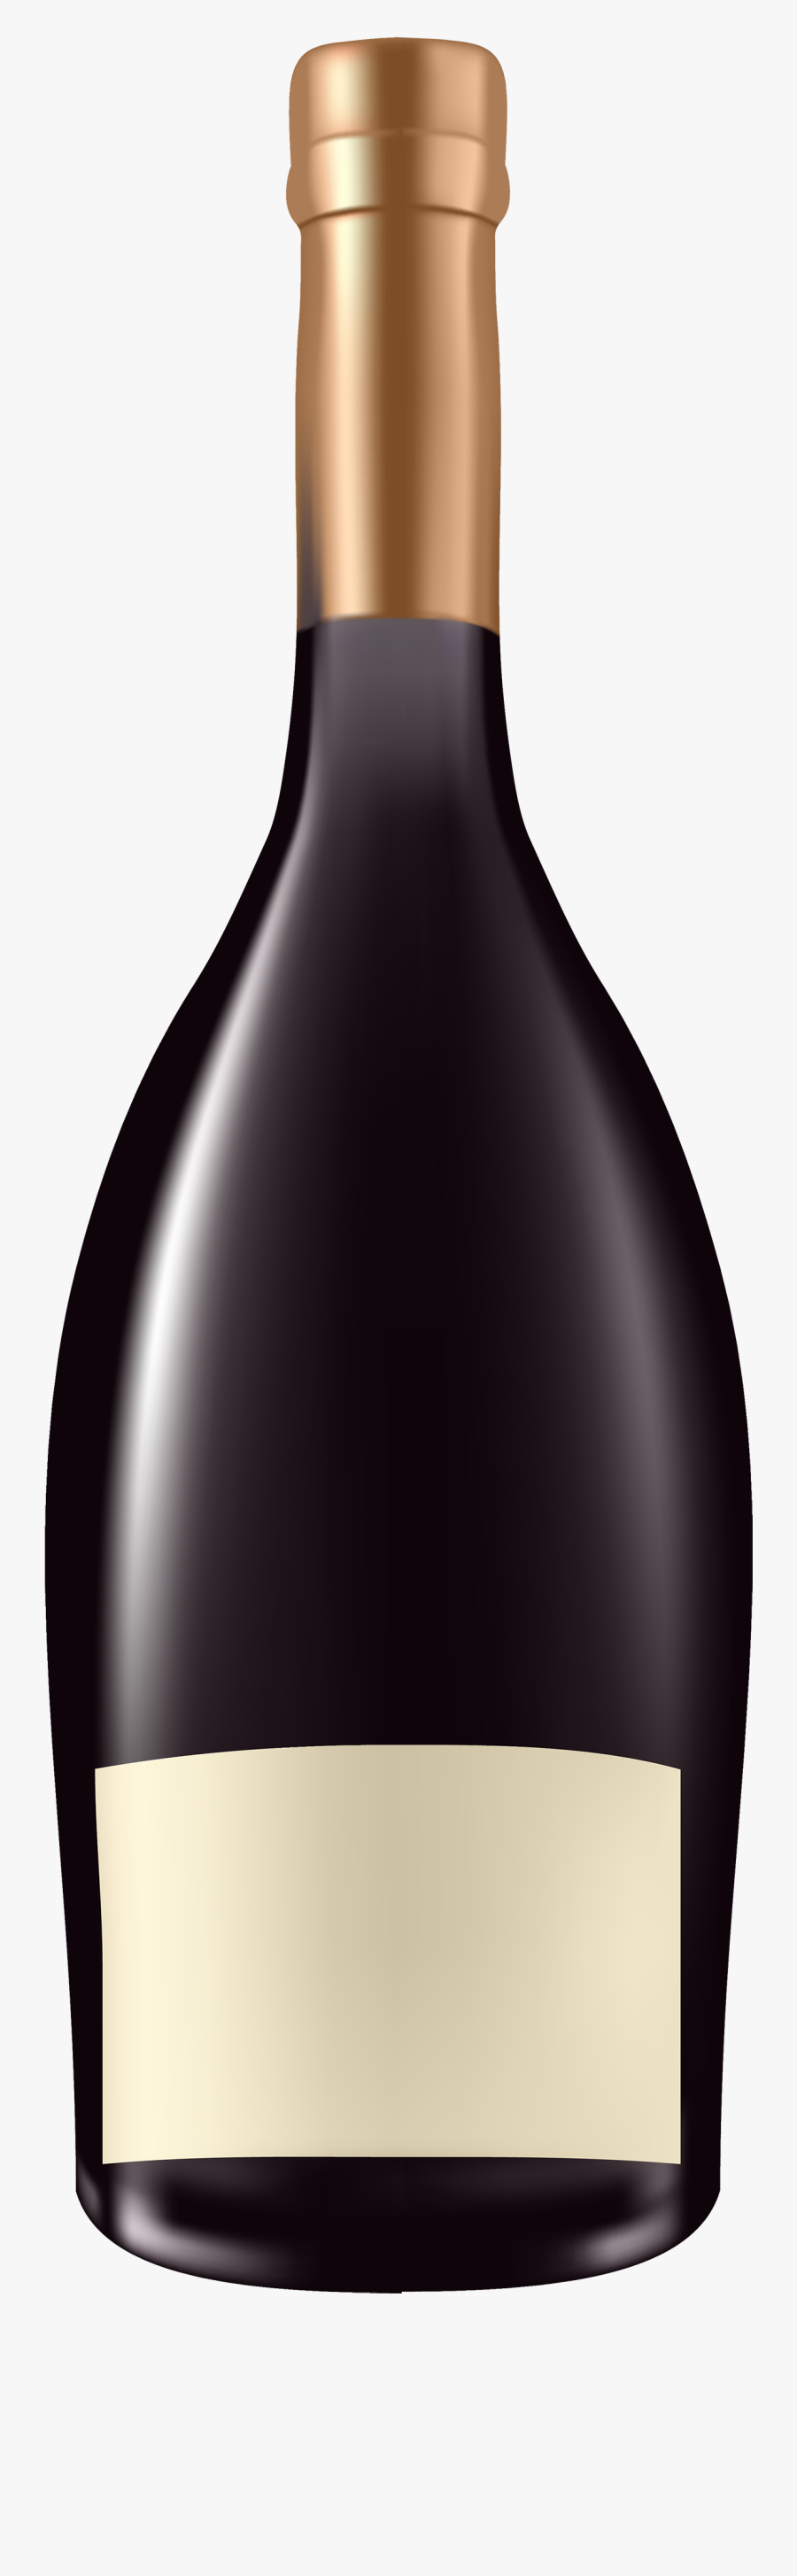 Alcohol Bottle Clipart Png, Transparent Clipart